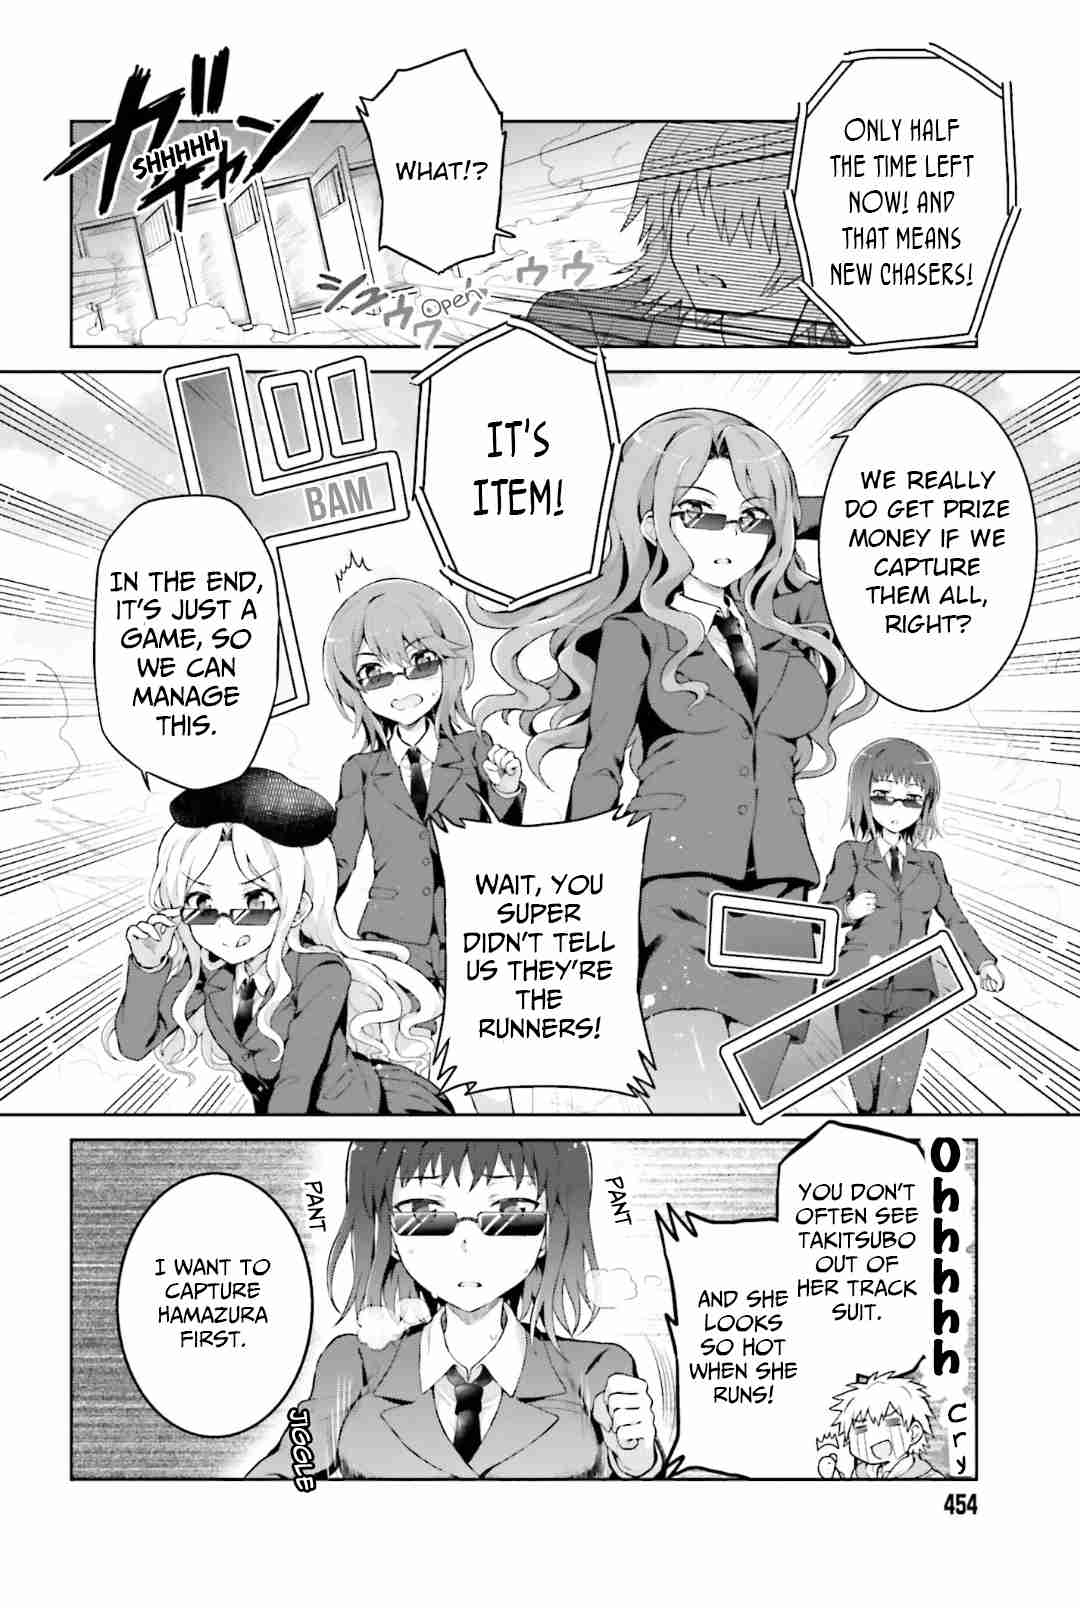 Toaru Idol no Accelerator sama Vol. 4 Ch. 35